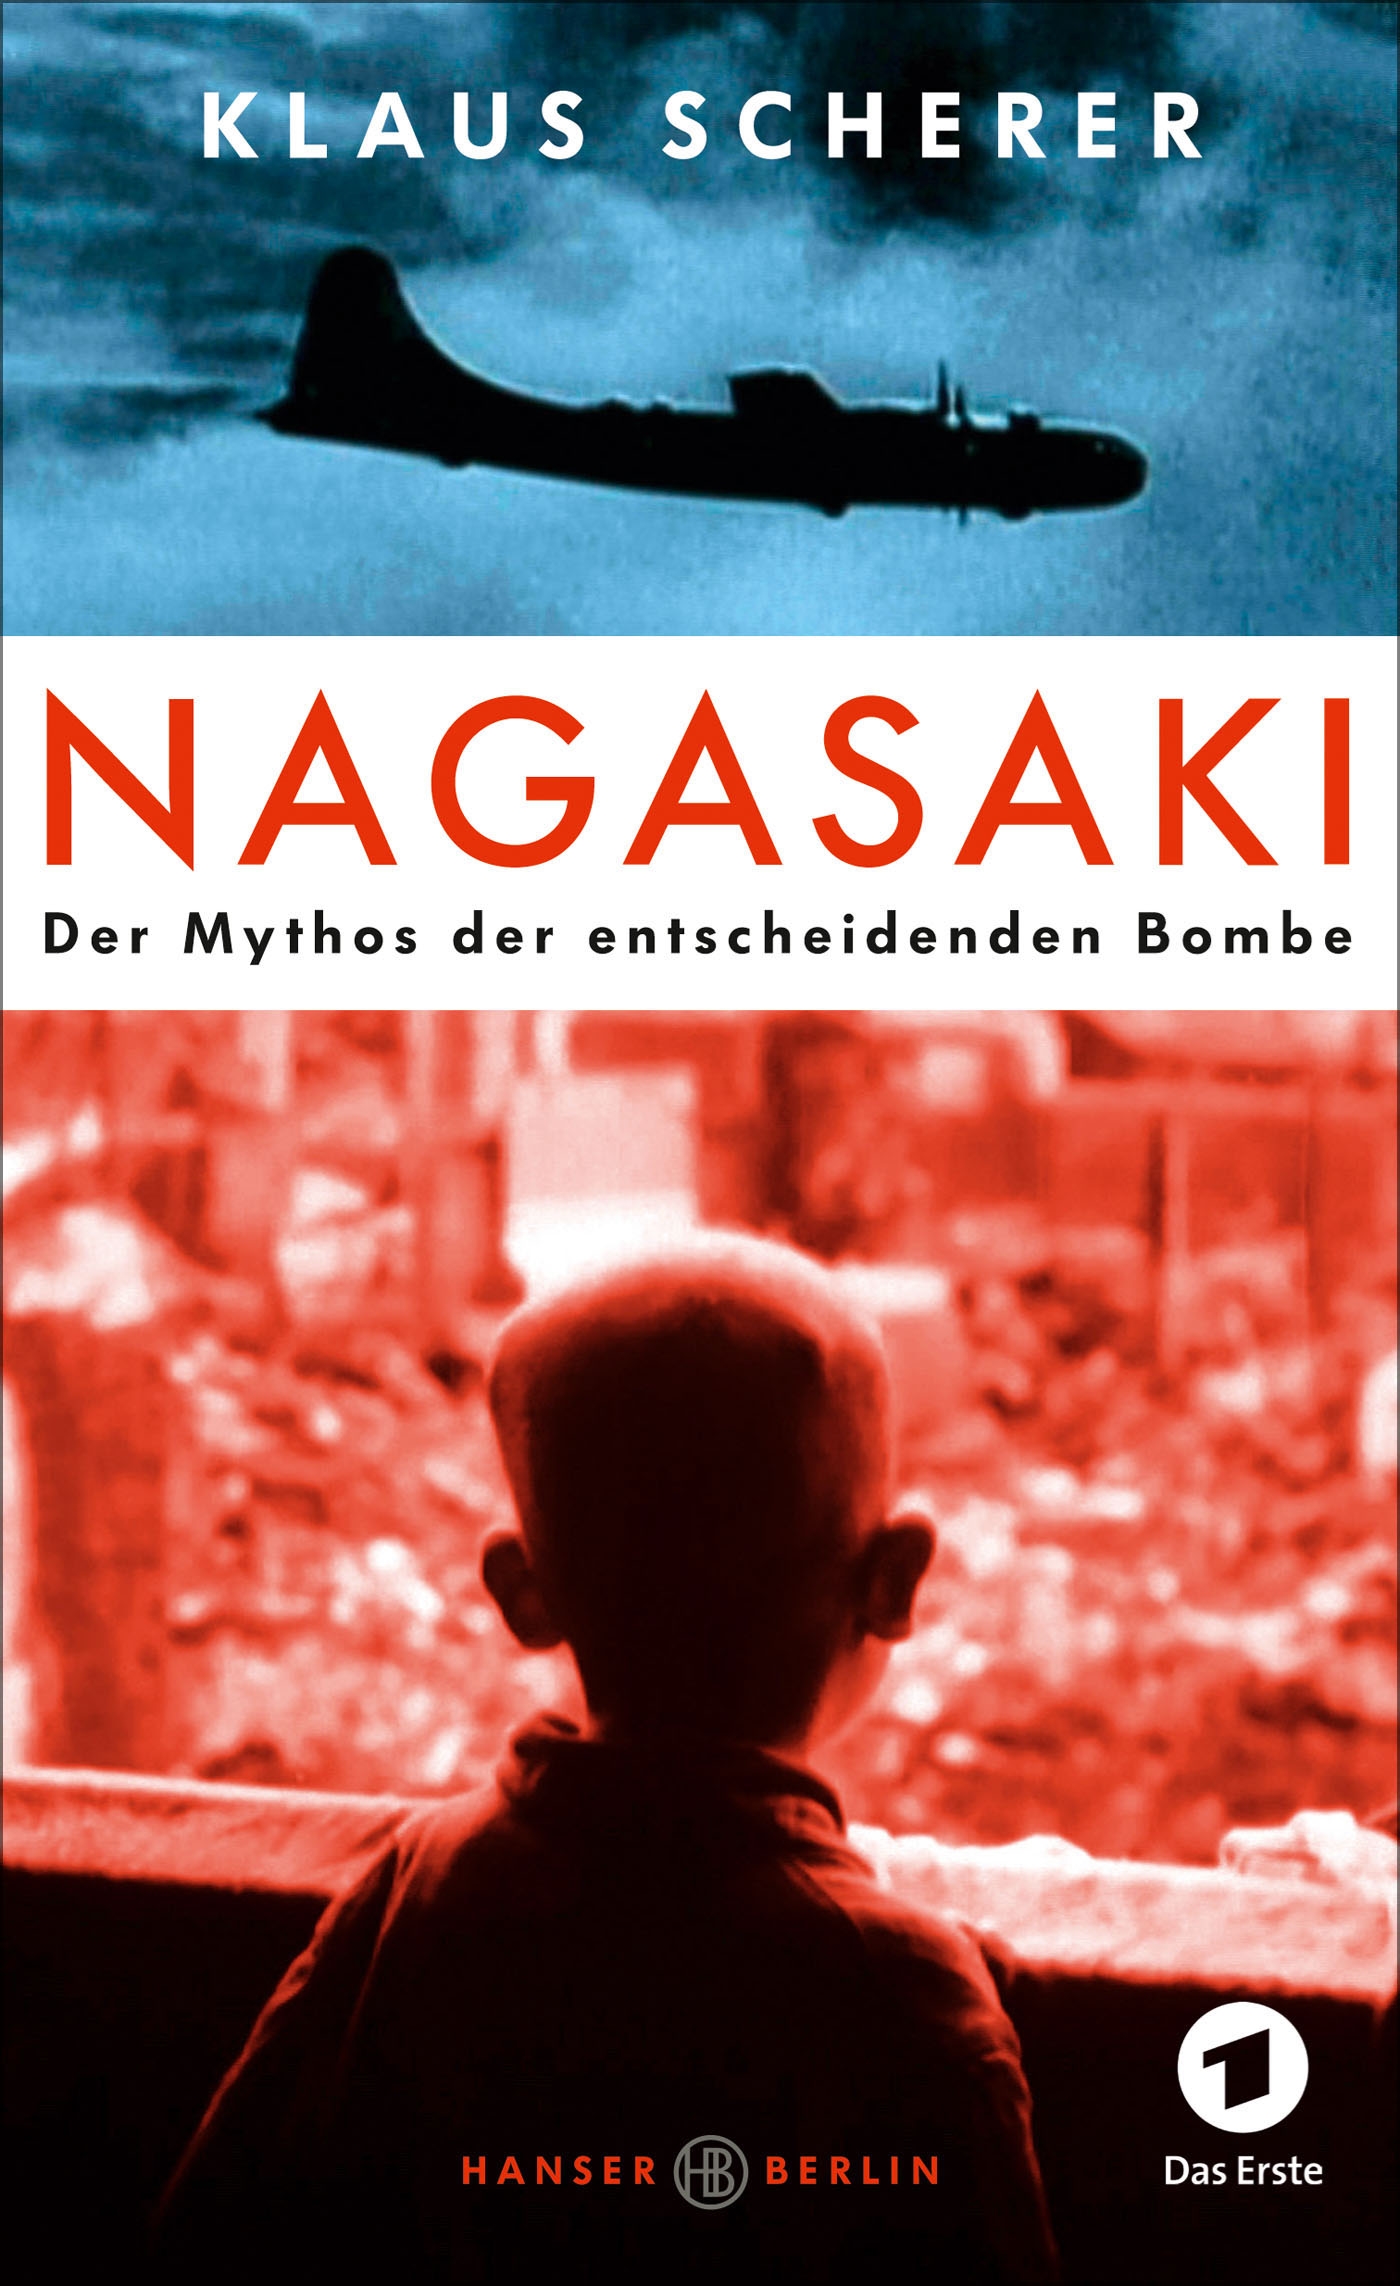 Nagasaki – the legend of the decisive bomb